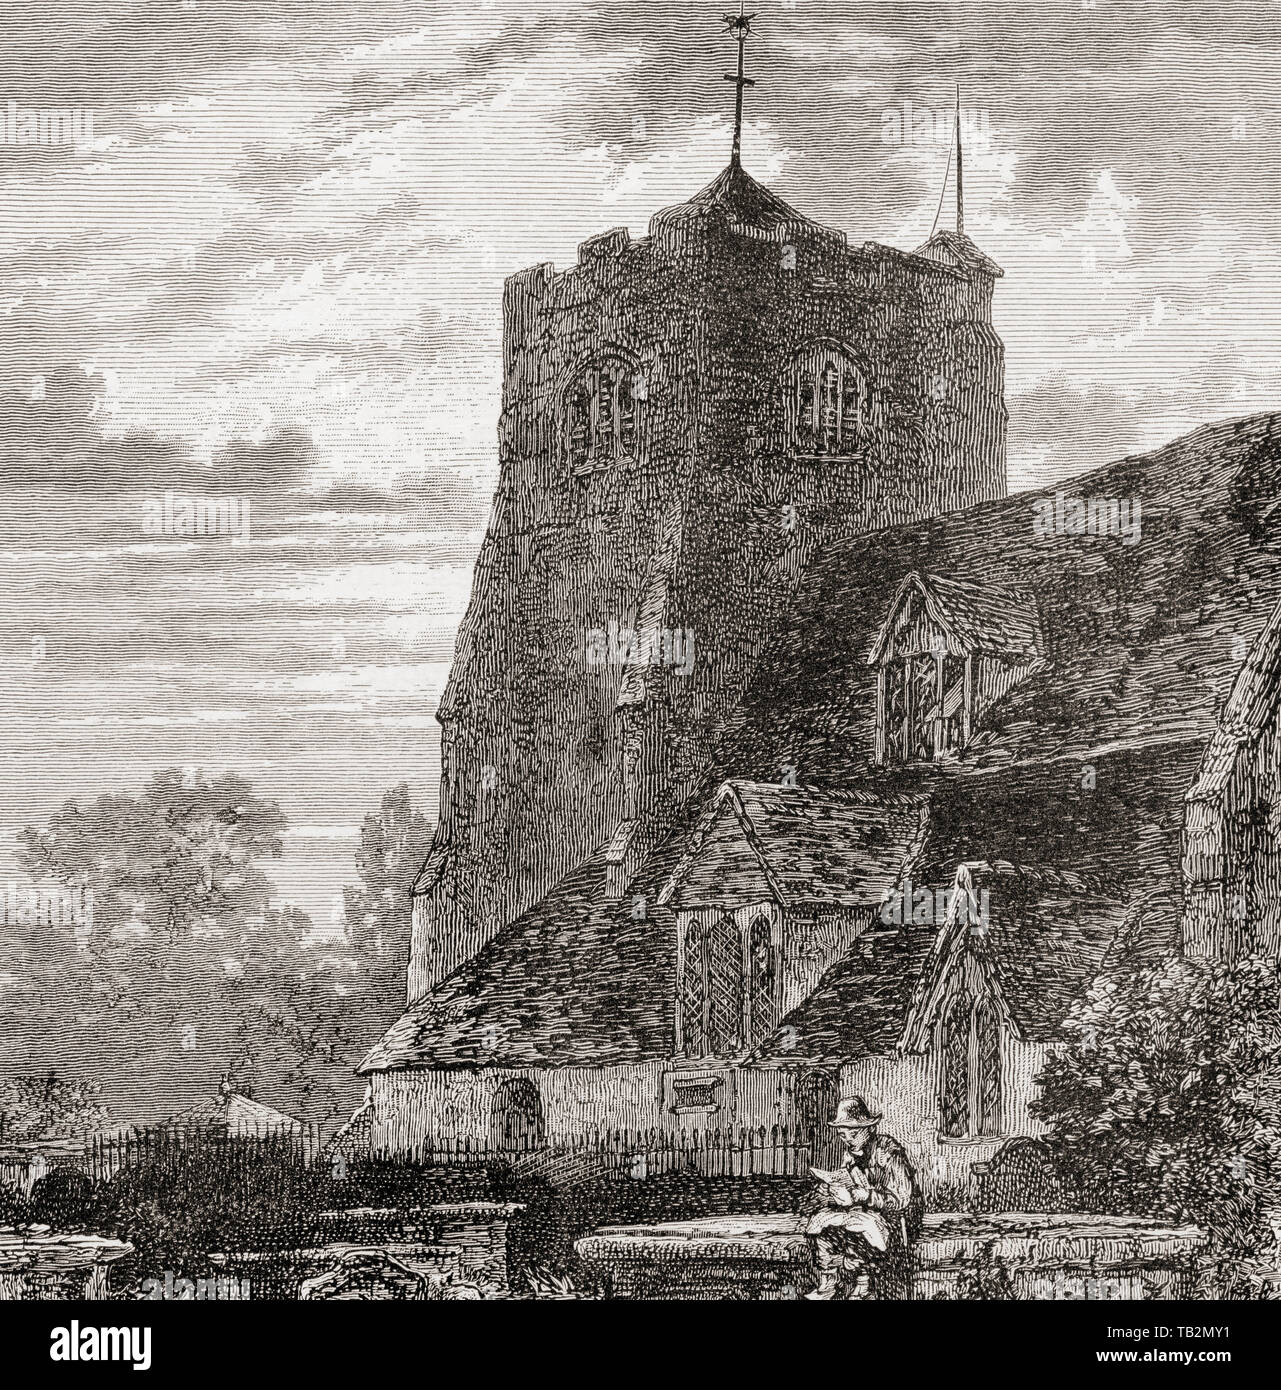 L'église de Sainte Marie et saint Nicolas, Leatherhead, Surrey, Angleterre, vu ici au 19e siècle. Cette paroisse anglicane église date du 11ème siècle. Photos de l'anglais, publié en 1890. Banque D'Images